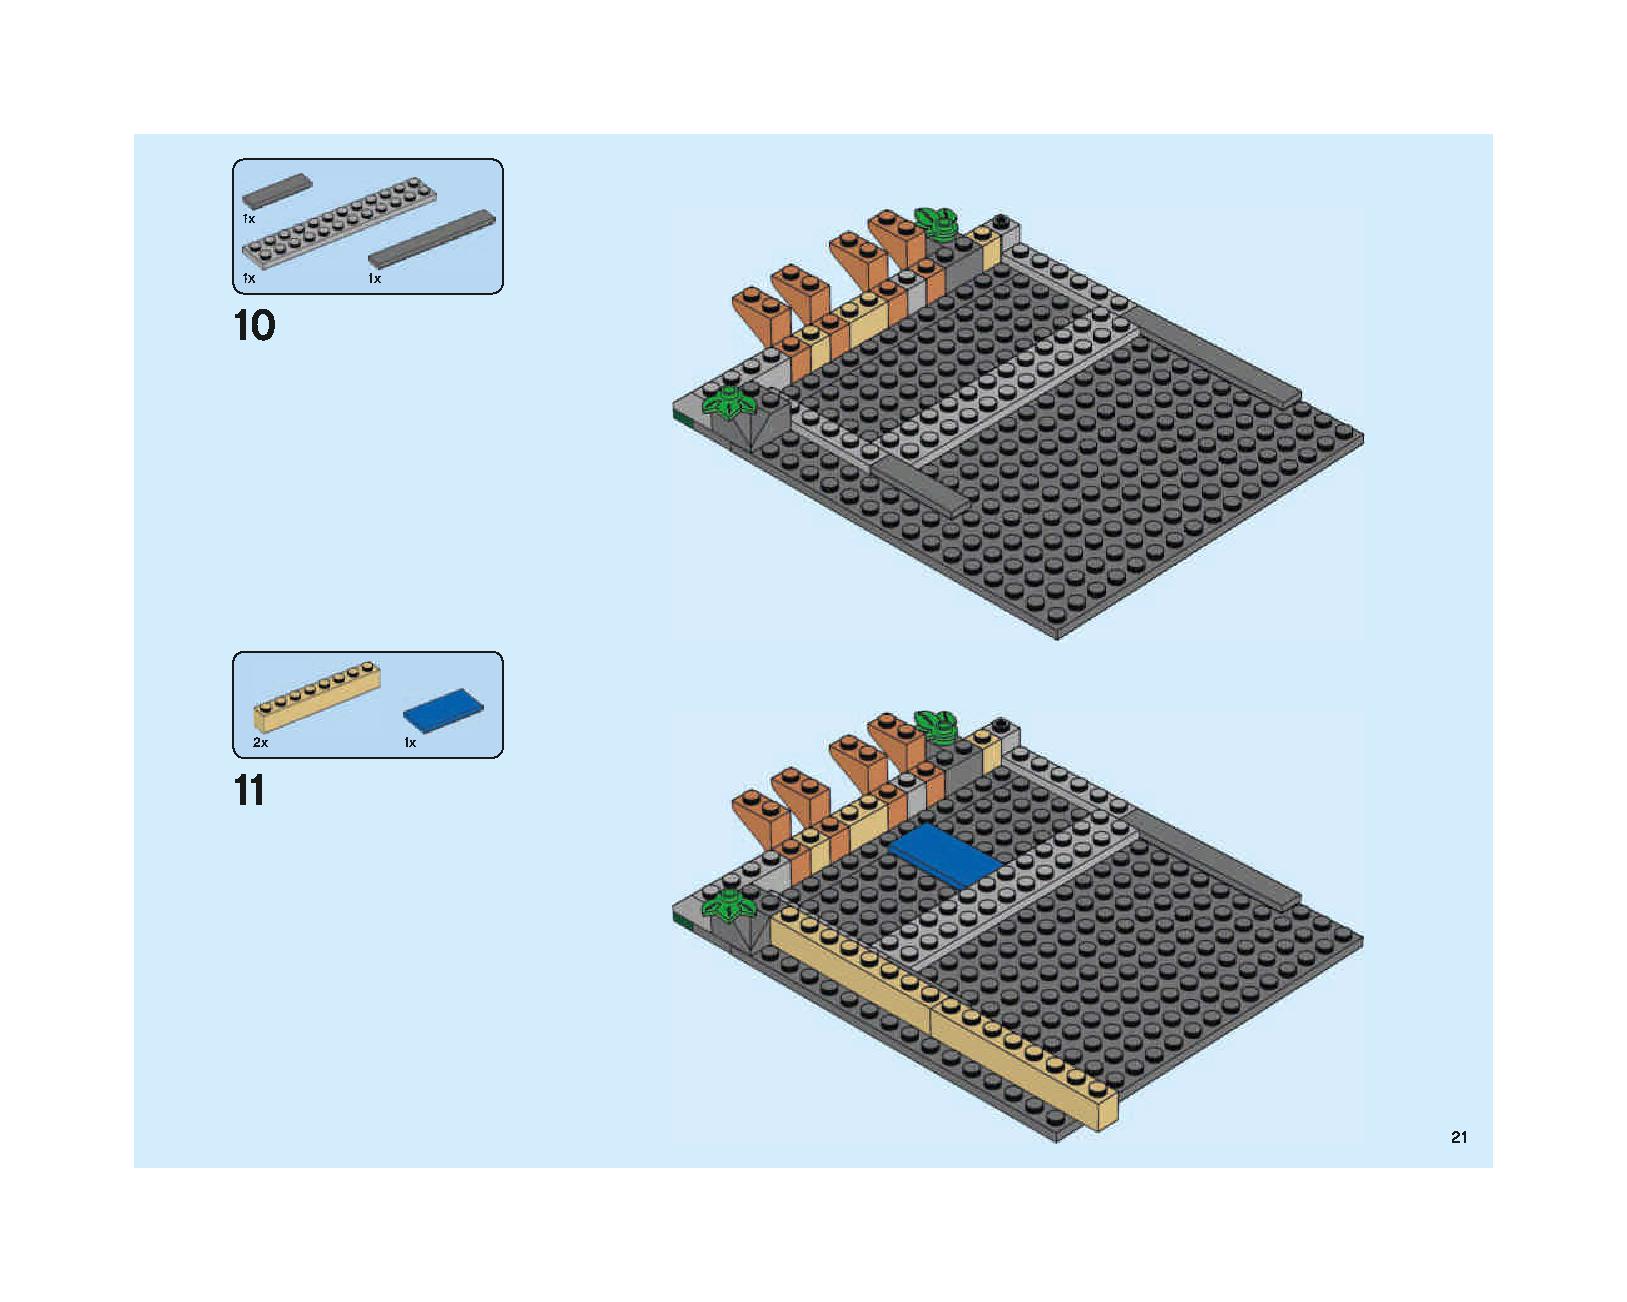 ホグワーツの大広間 75954 レゴの商品情報 レゴの説明書・組立方法 21 page